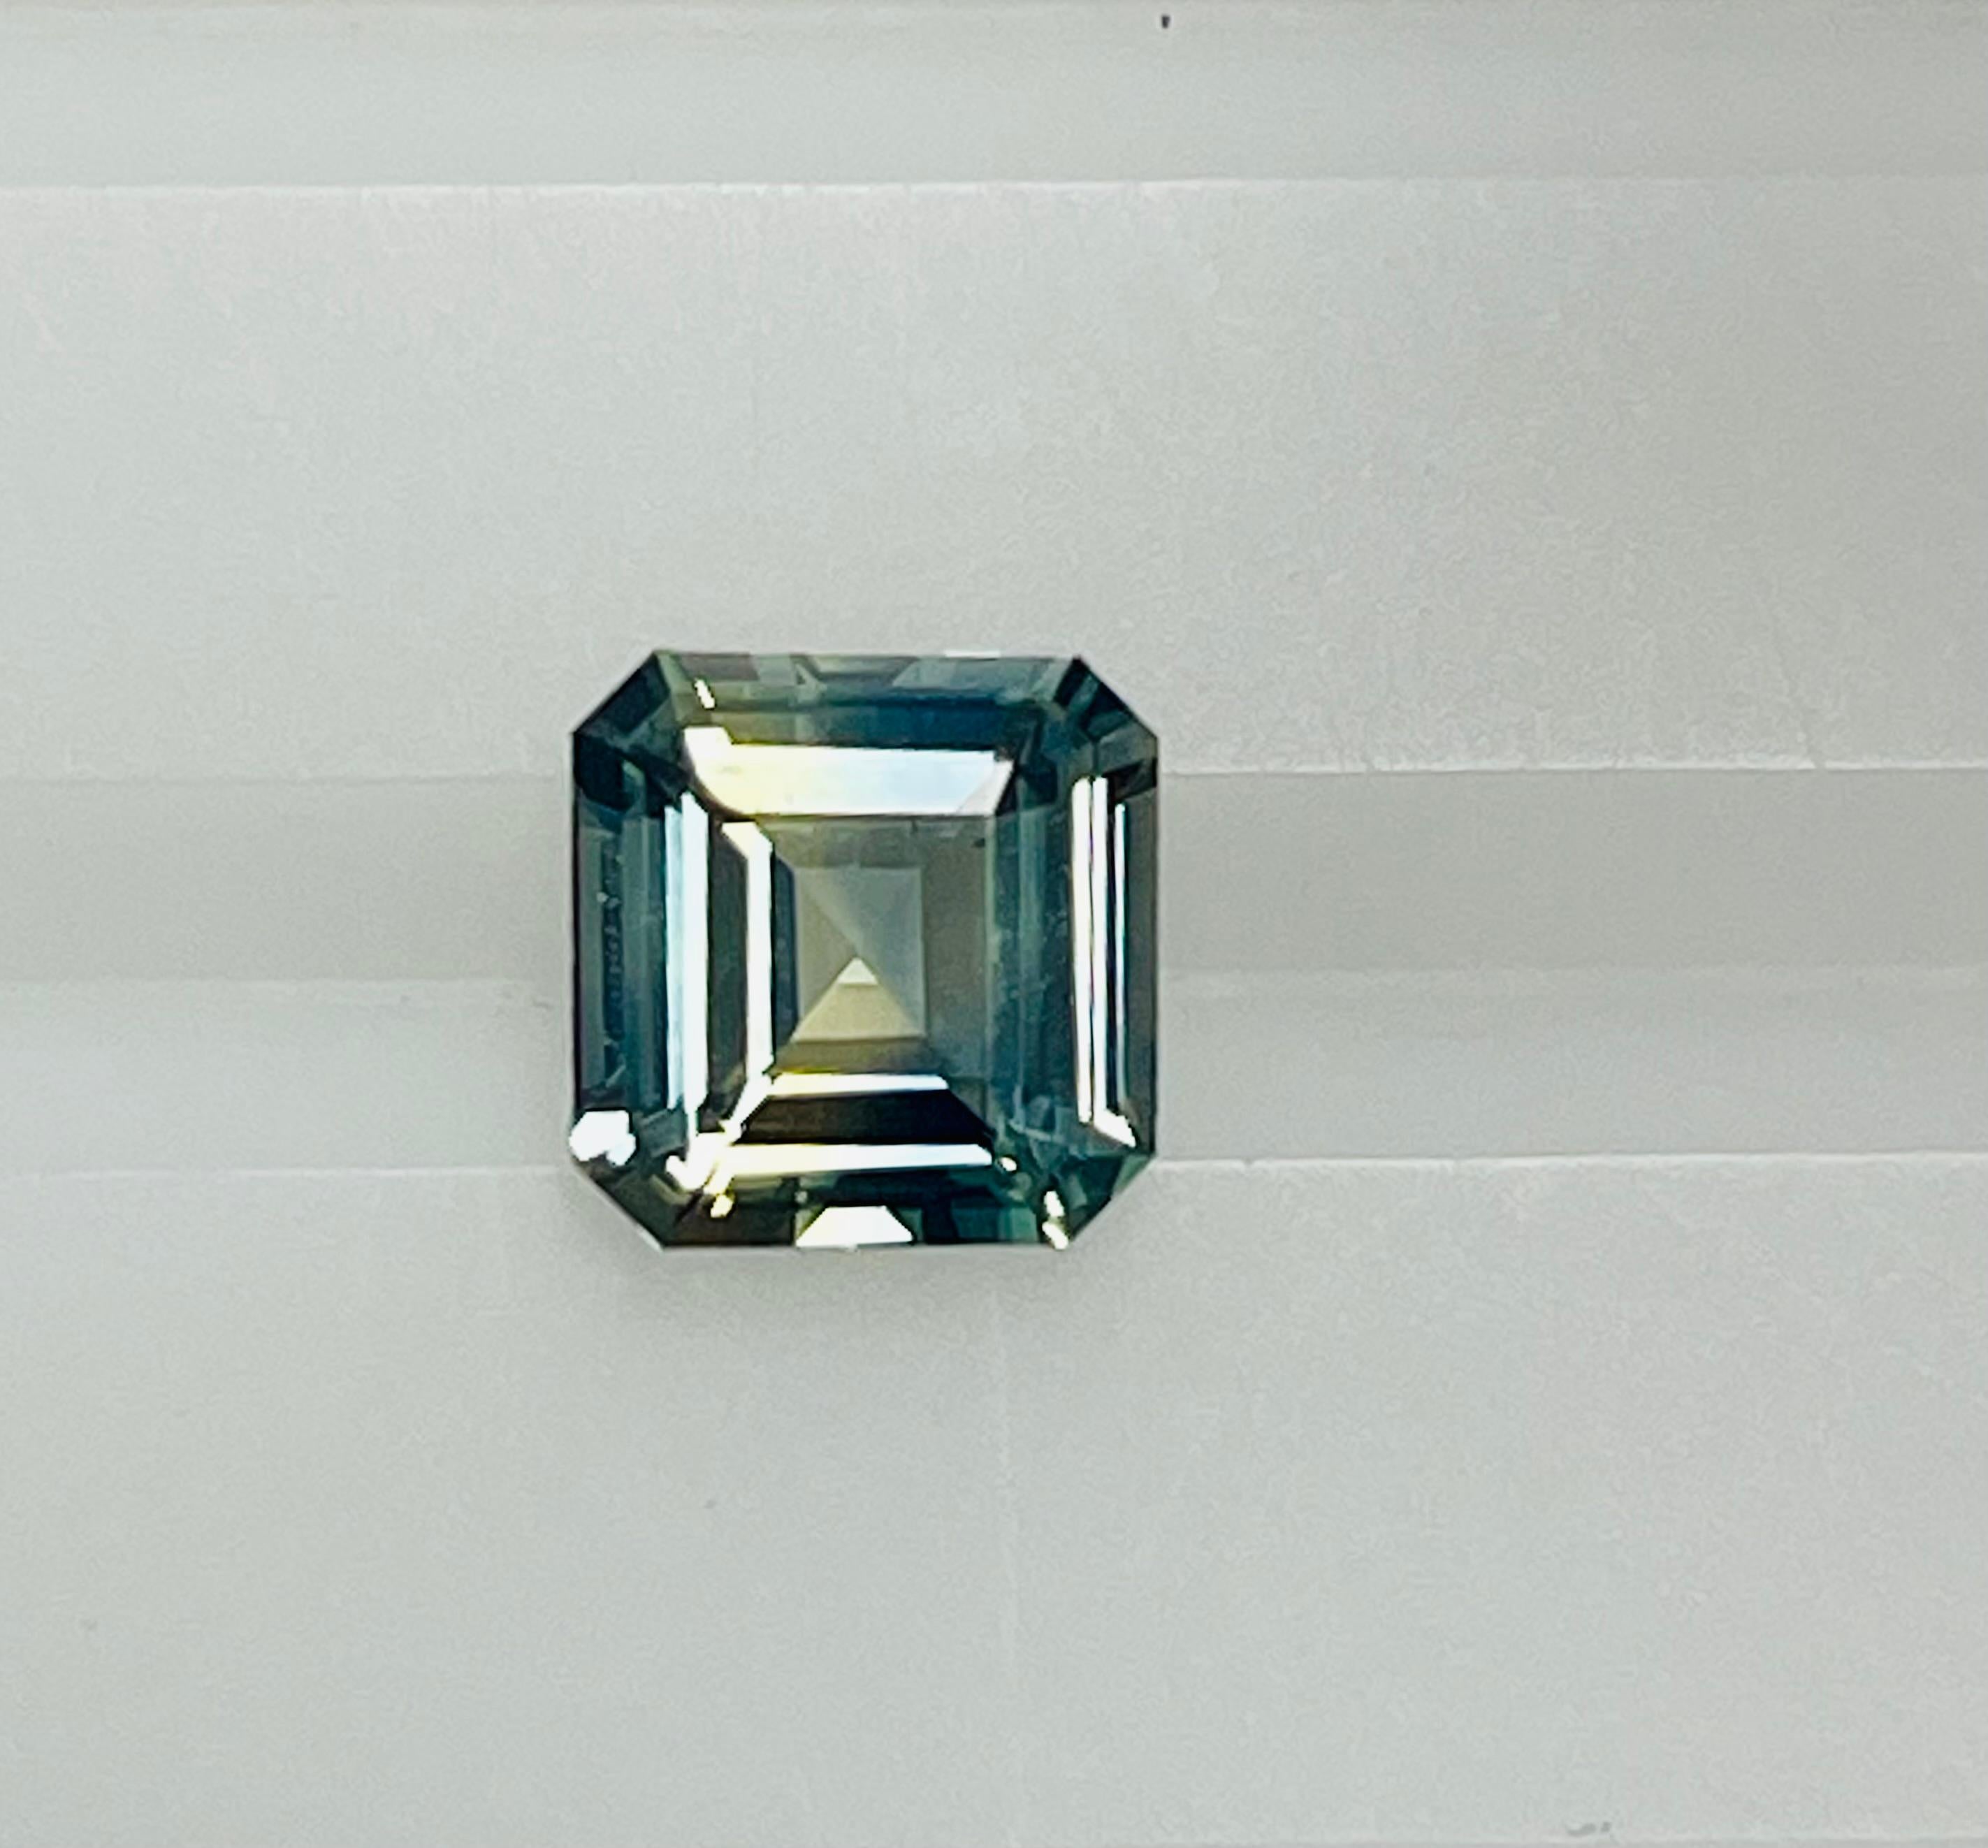 Ce saphir carré de 2,05 carats présente un mélange de couleurs bleues, vertes et jaunes dans une taille, une forme et une luminosité exceptionnelles. Ce mélange de couleurs, de clarté et de taille en fait un saphir très inhabituel de grande qualité.